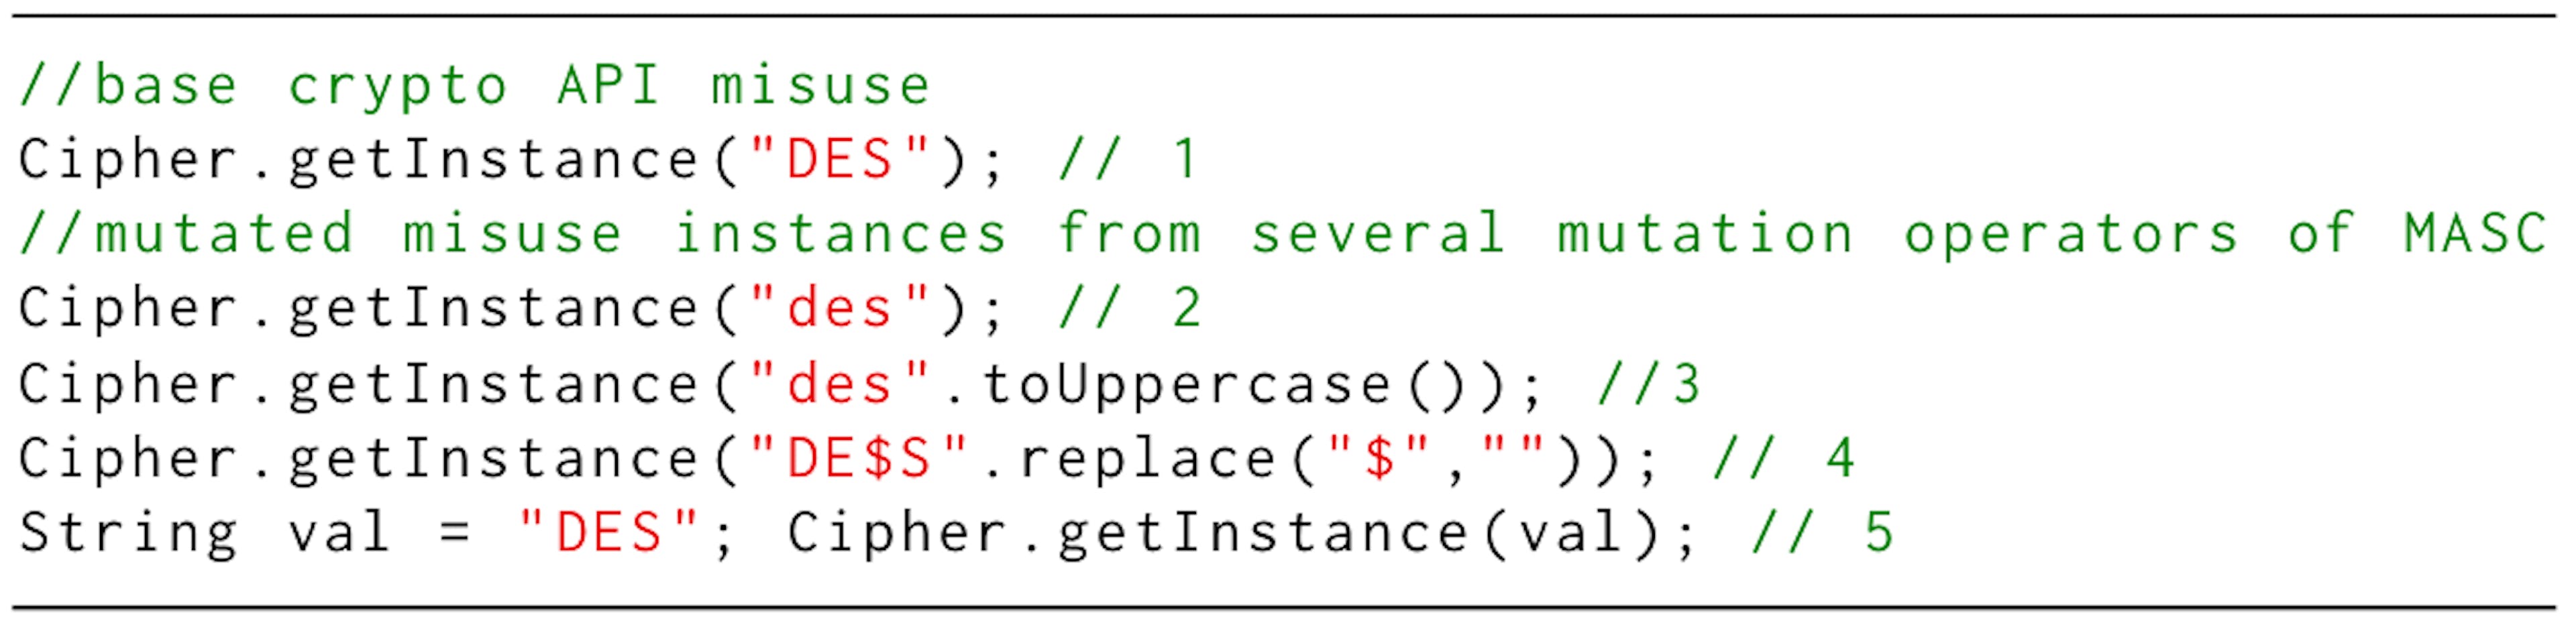 Listagem 1: Exemplo de instâncias de uso indevido de API de criptografia criadas pelo MASC